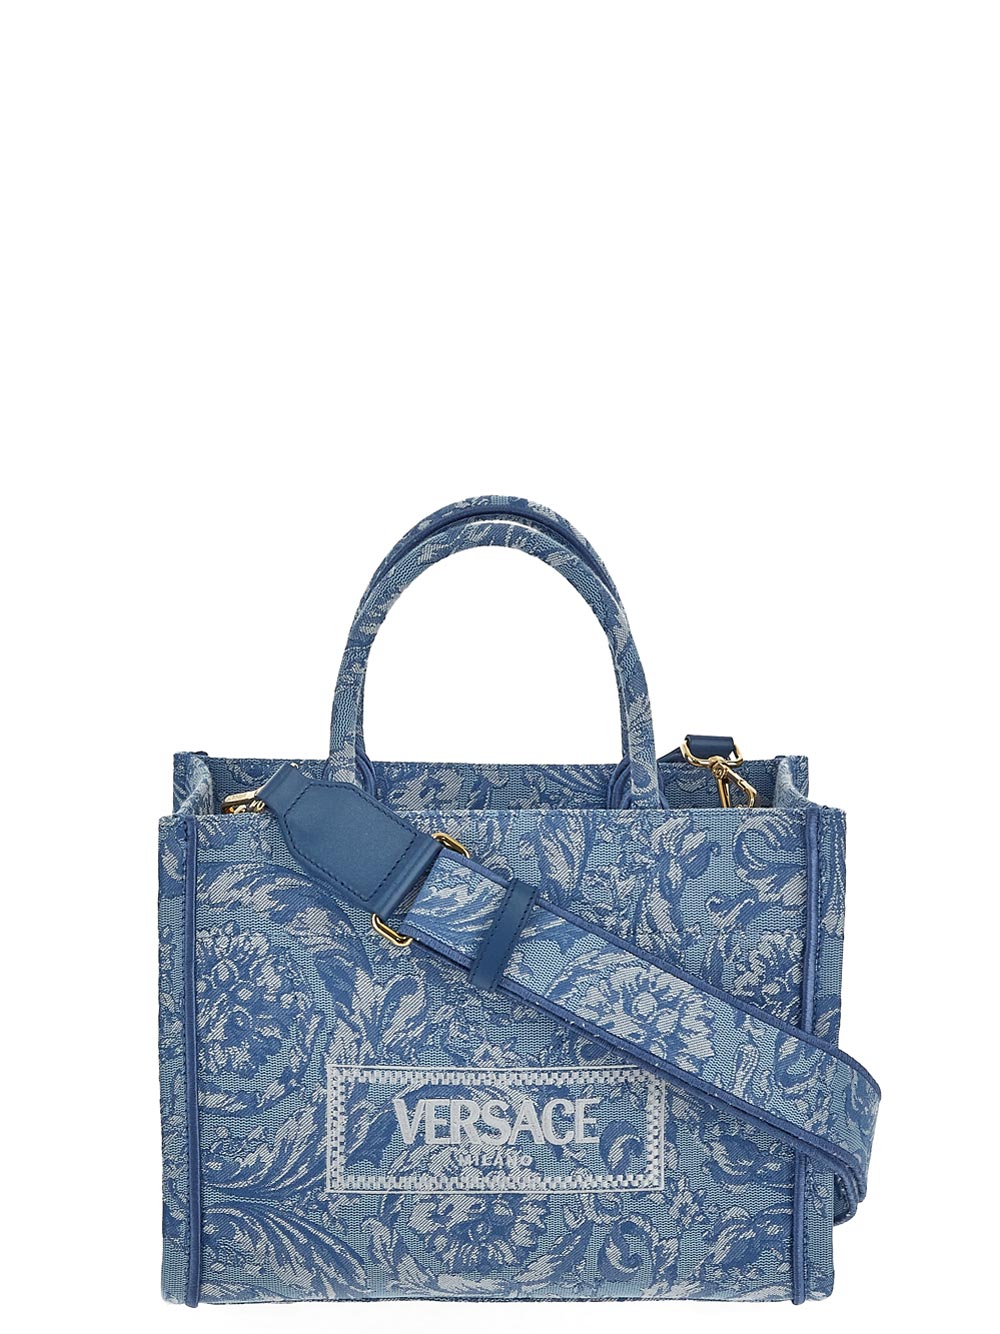 Versace Barocco Athena Small Tote Bag